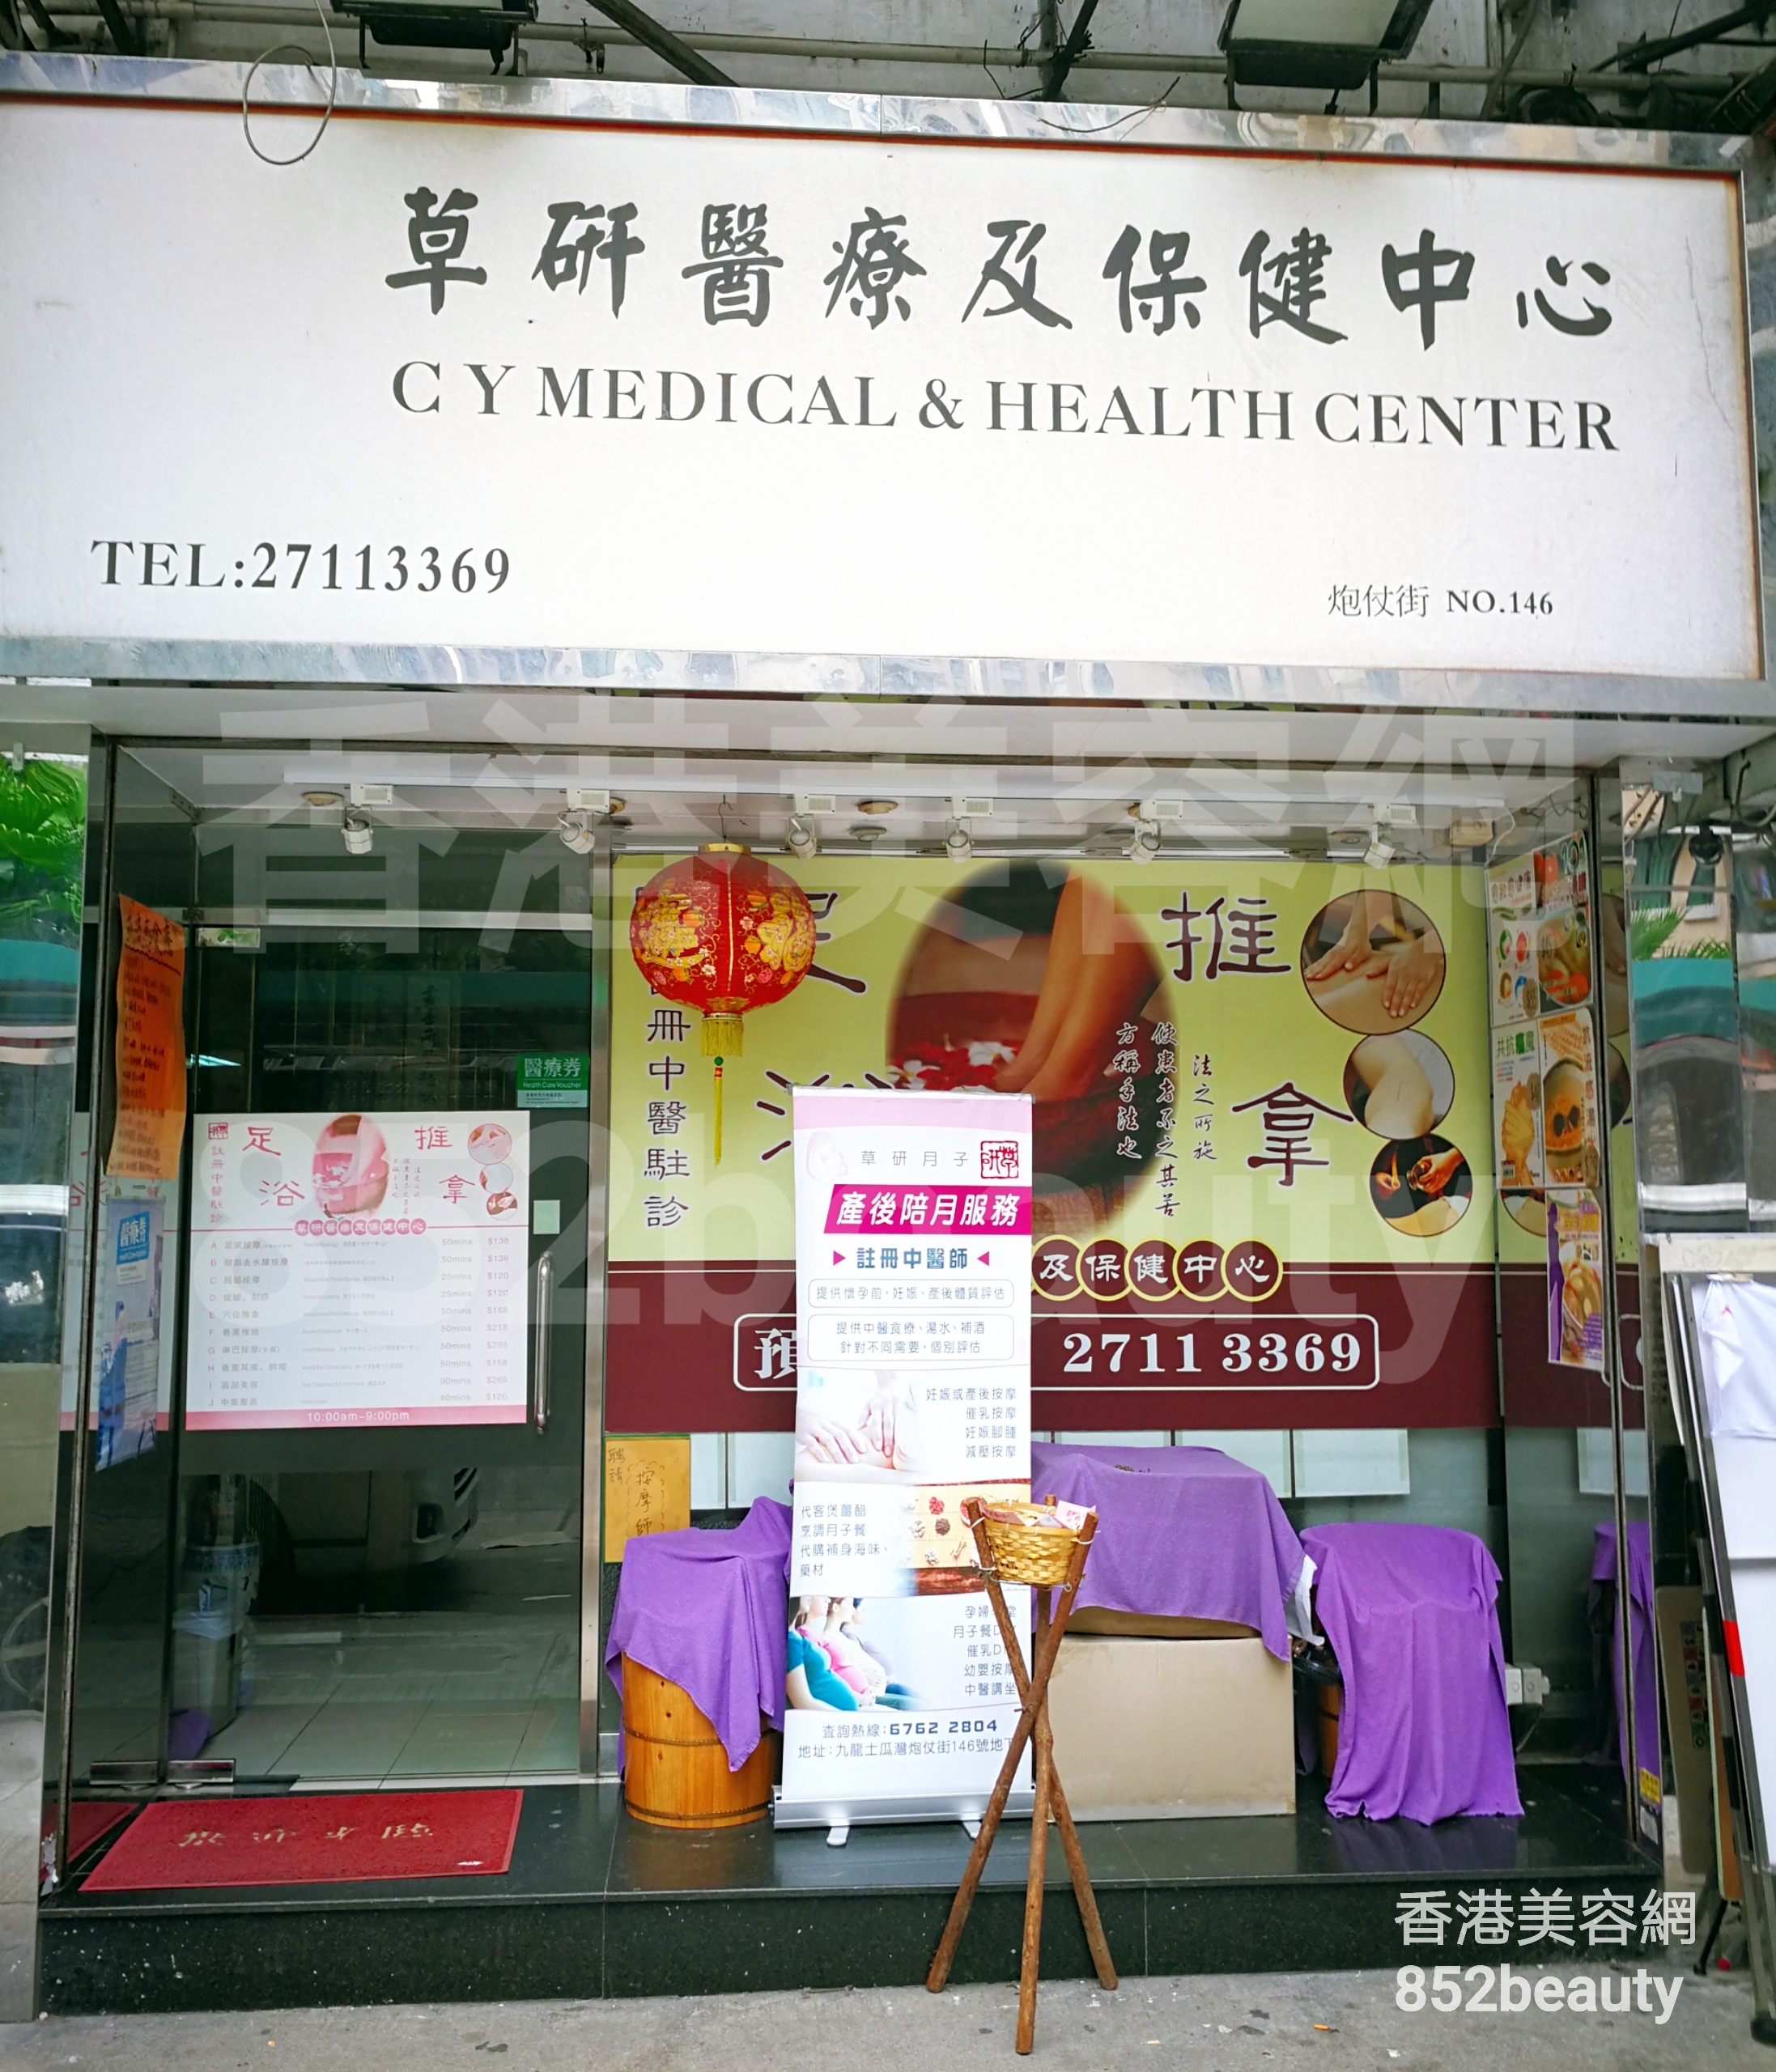 香港美容網 Hong Kong Beauty Salon 美容院 / 美容師: 草研醫療及保健中心